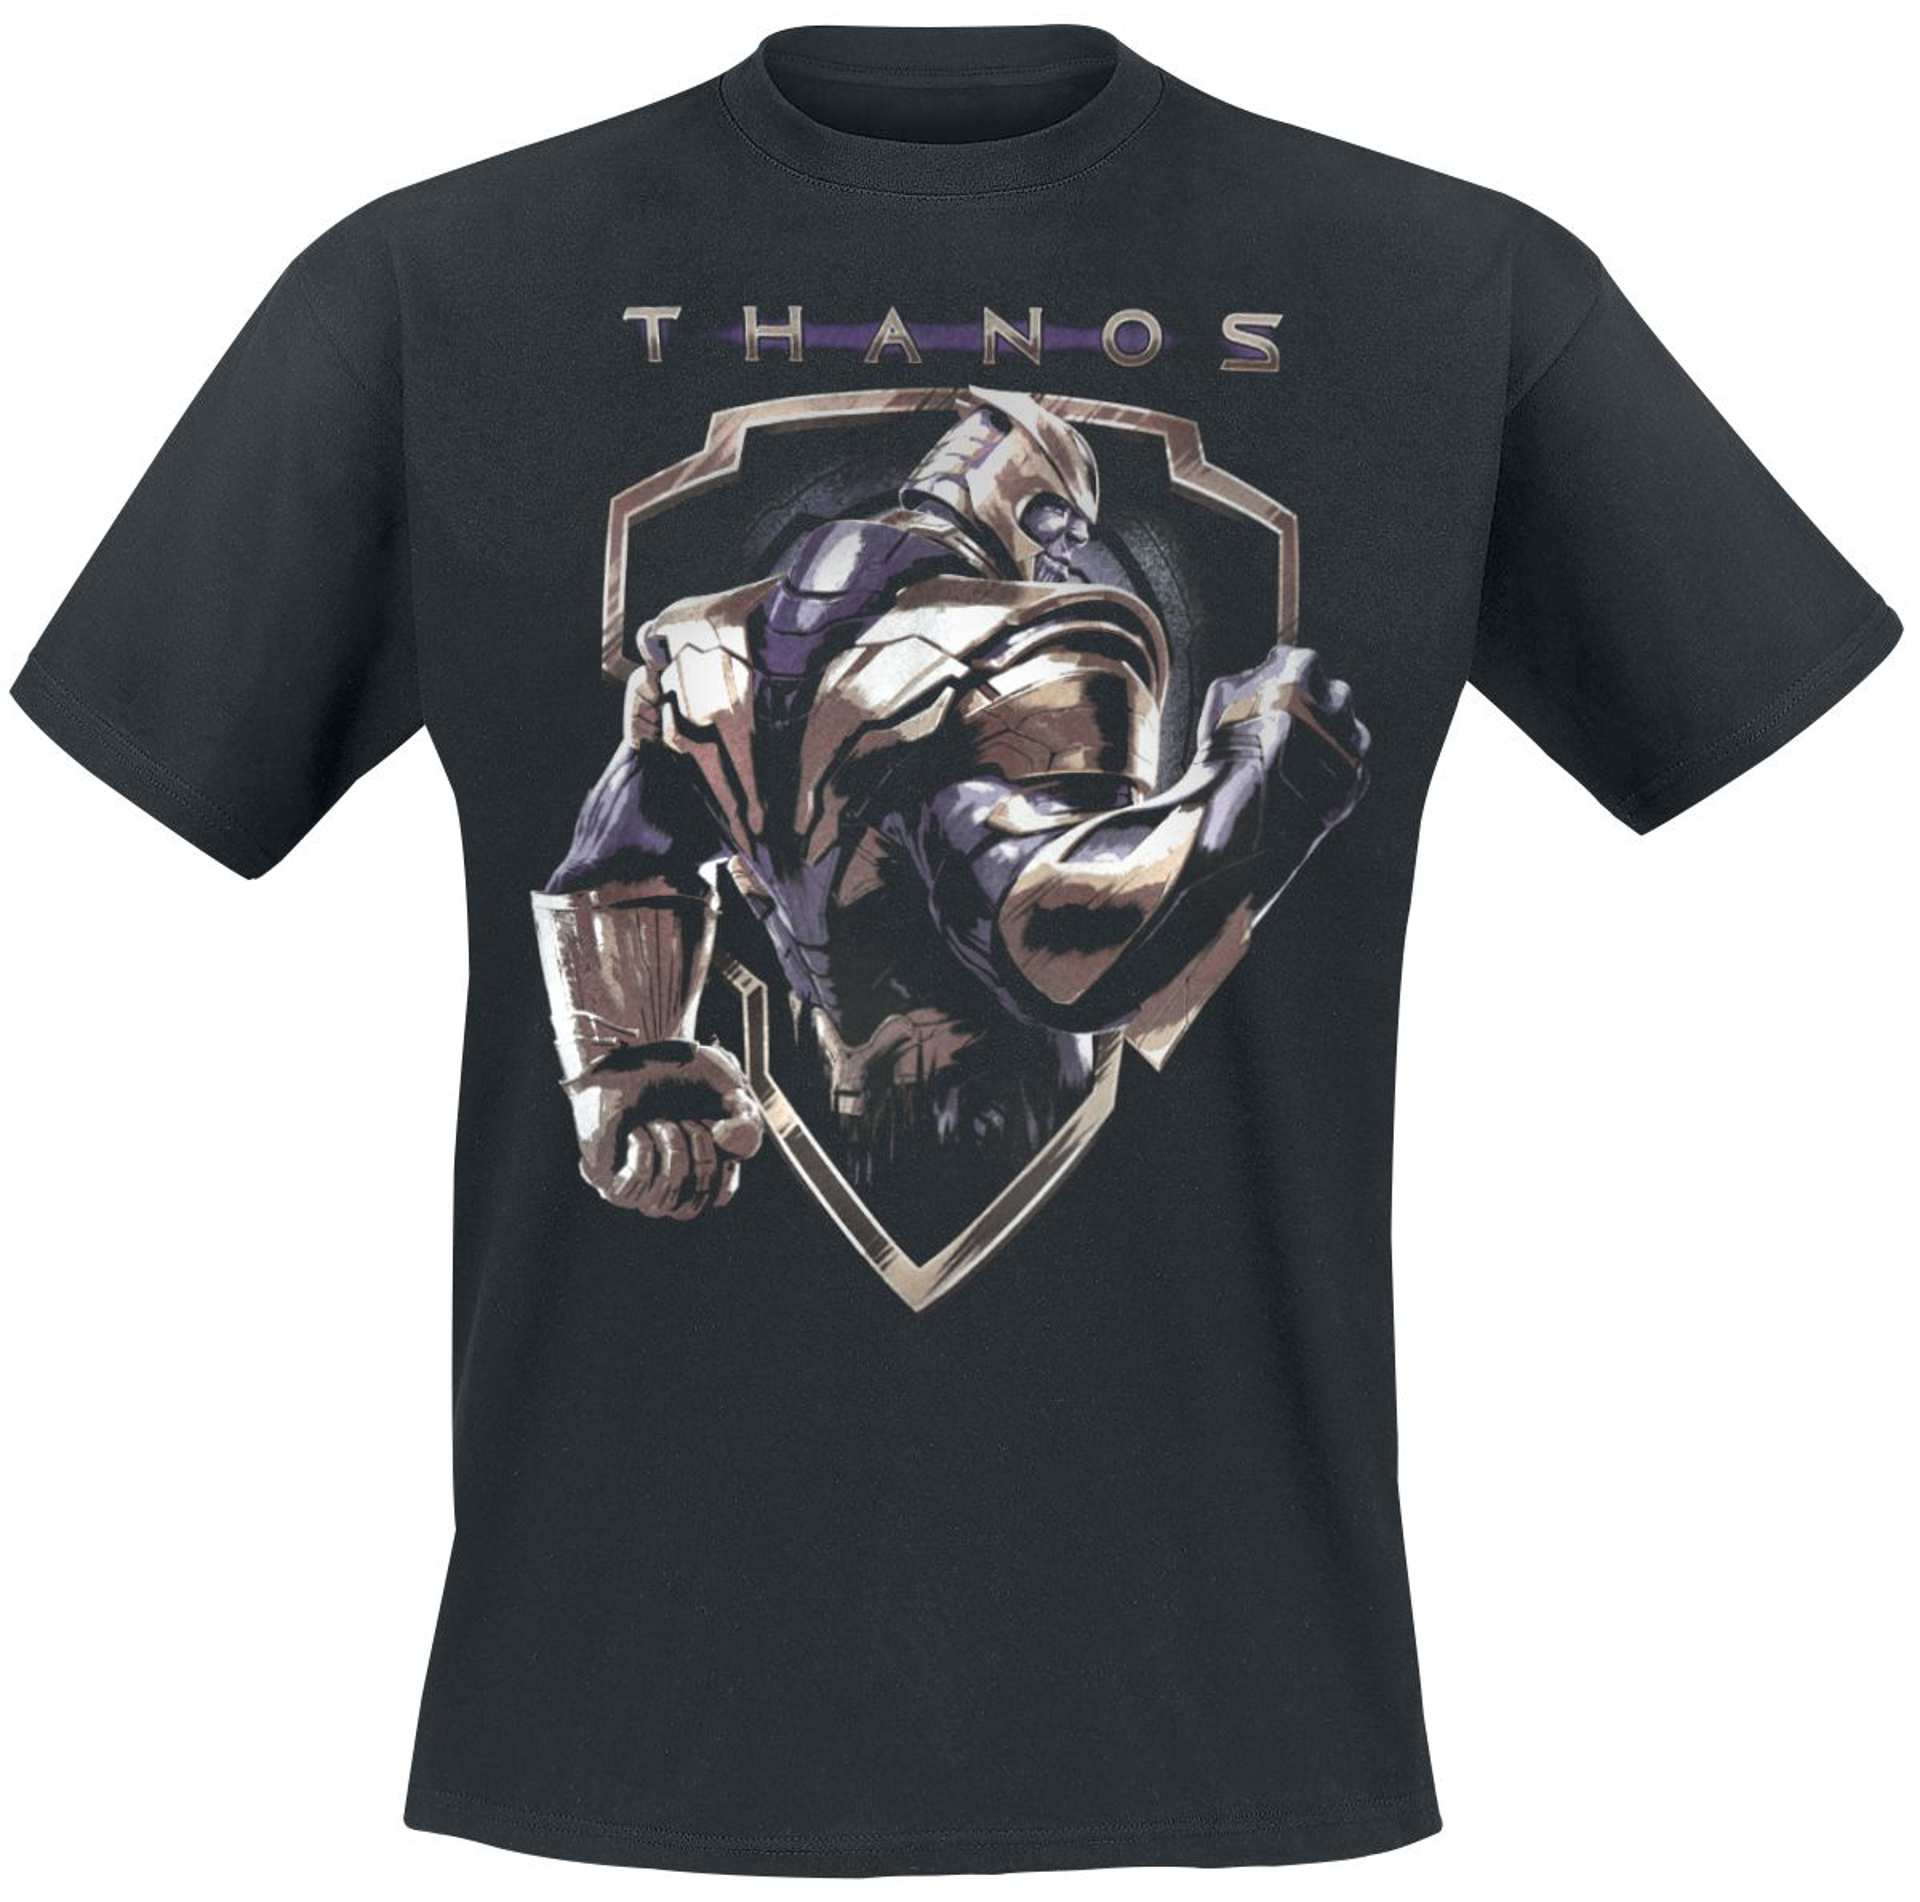 Marvel - Avengers Endgame Thanos Black T-Shirt XL